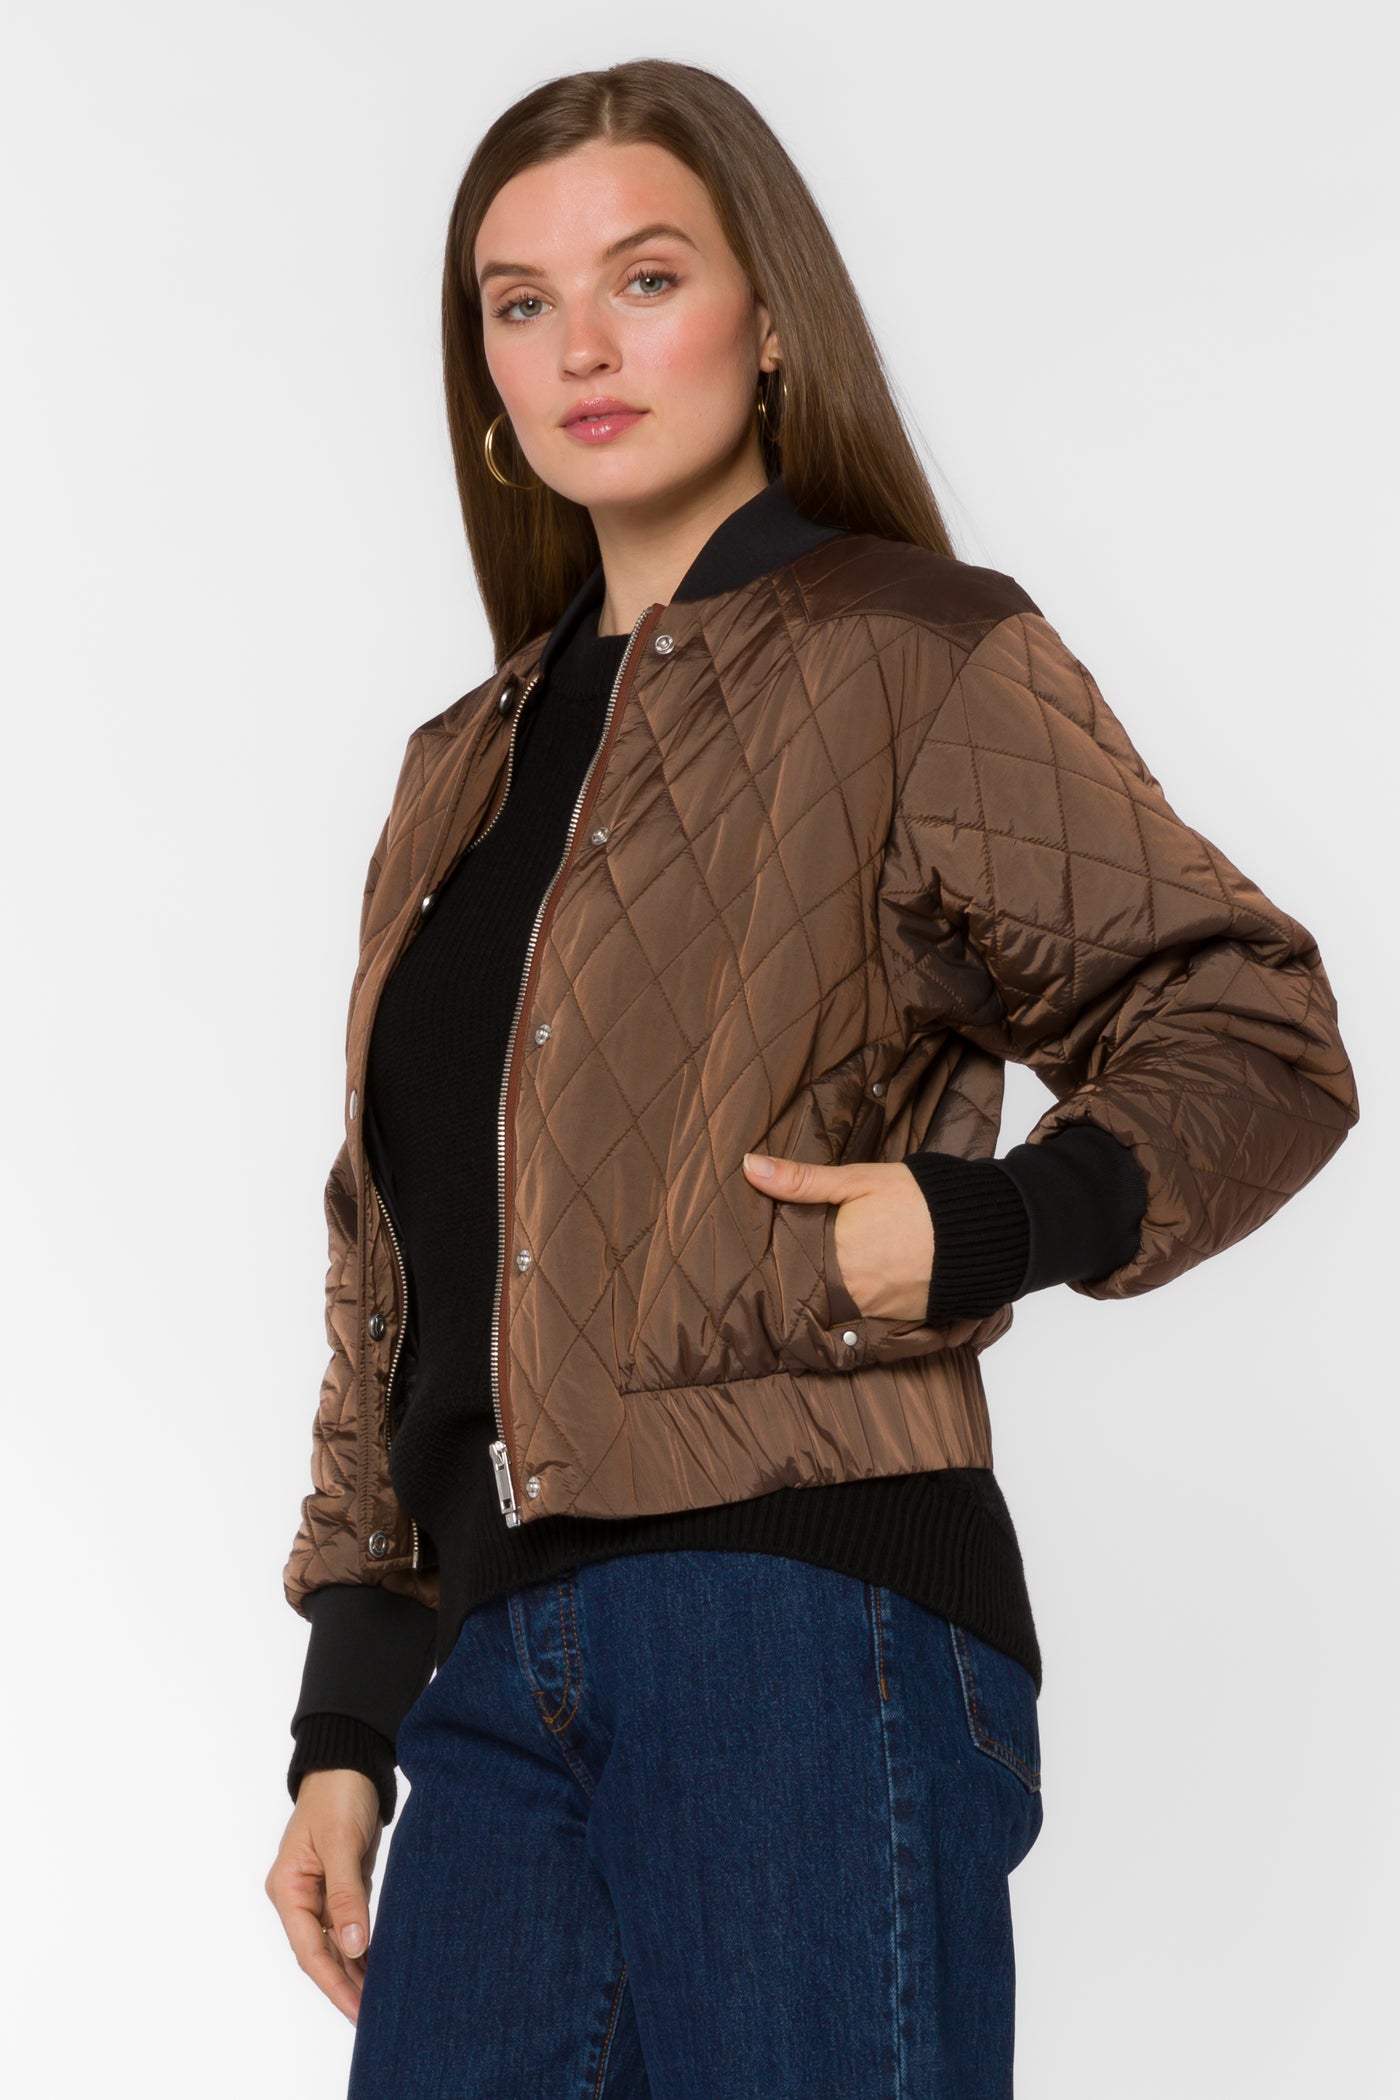 Sakura Brown Bomber Jacket - Jackets & Outerwear - Velvet Heart Clothing